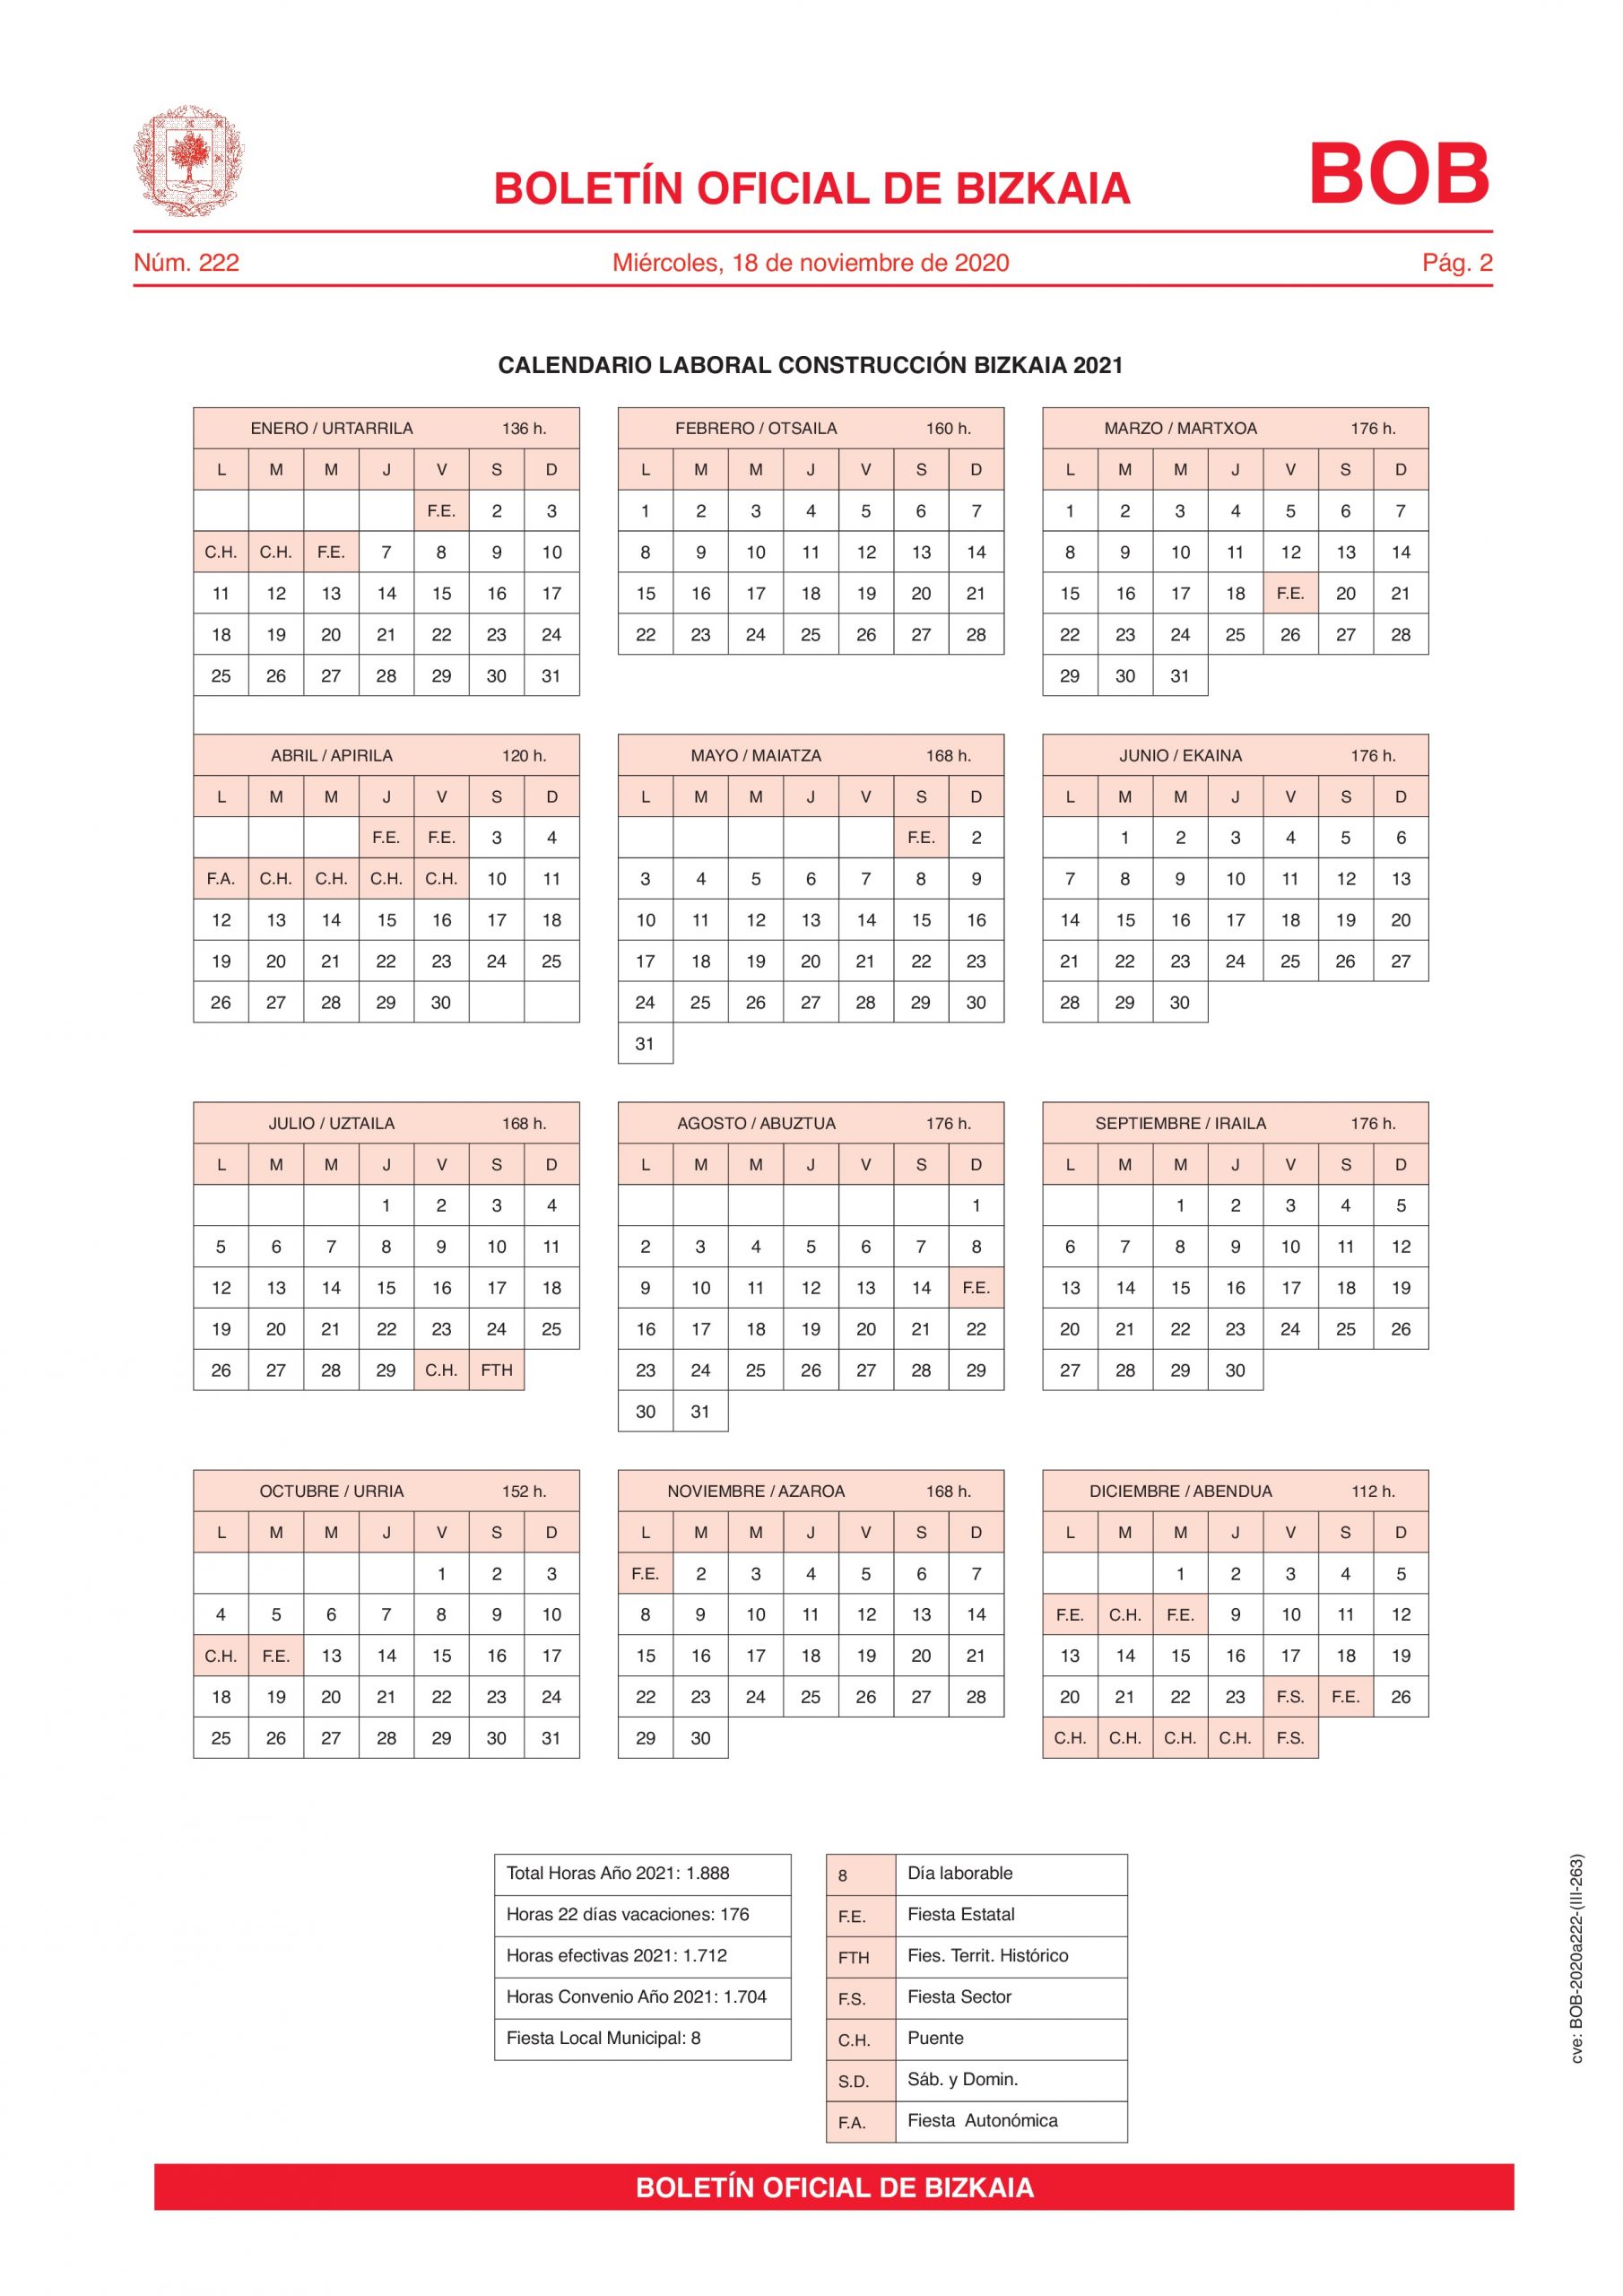 Bas Asesores Calendario Laboral Convenio Construccion Bizkaia 2021 Page 0